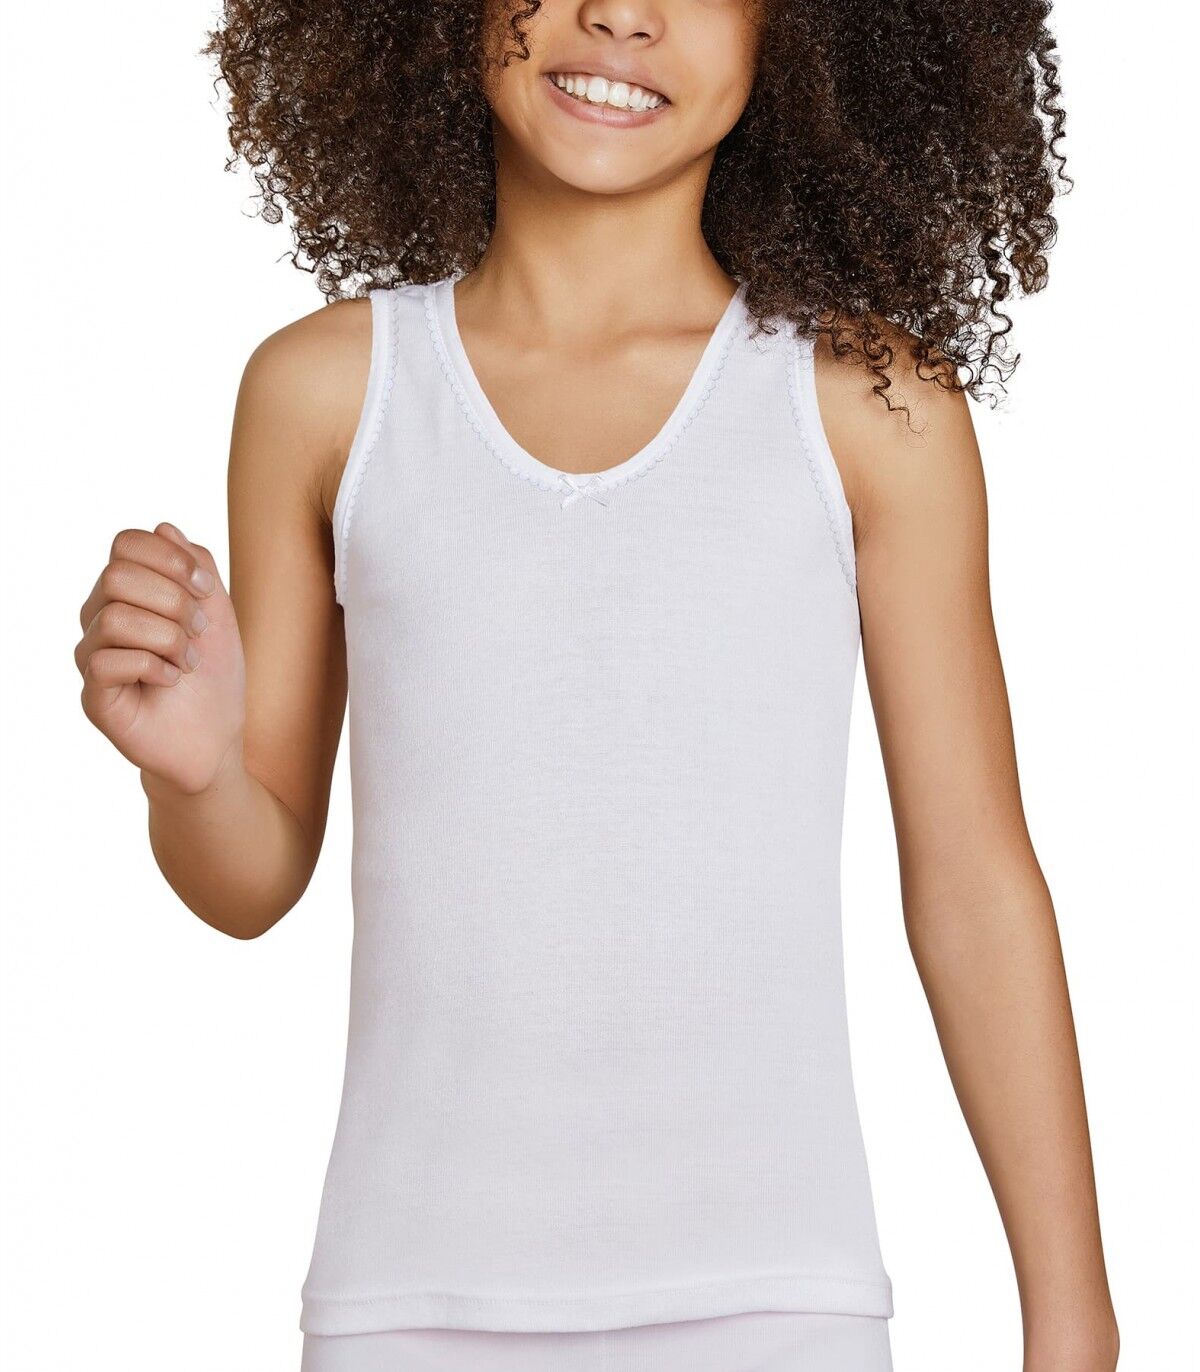 Camiseta infantil Tirantes Ysabel Mora 18306 2 Blanco